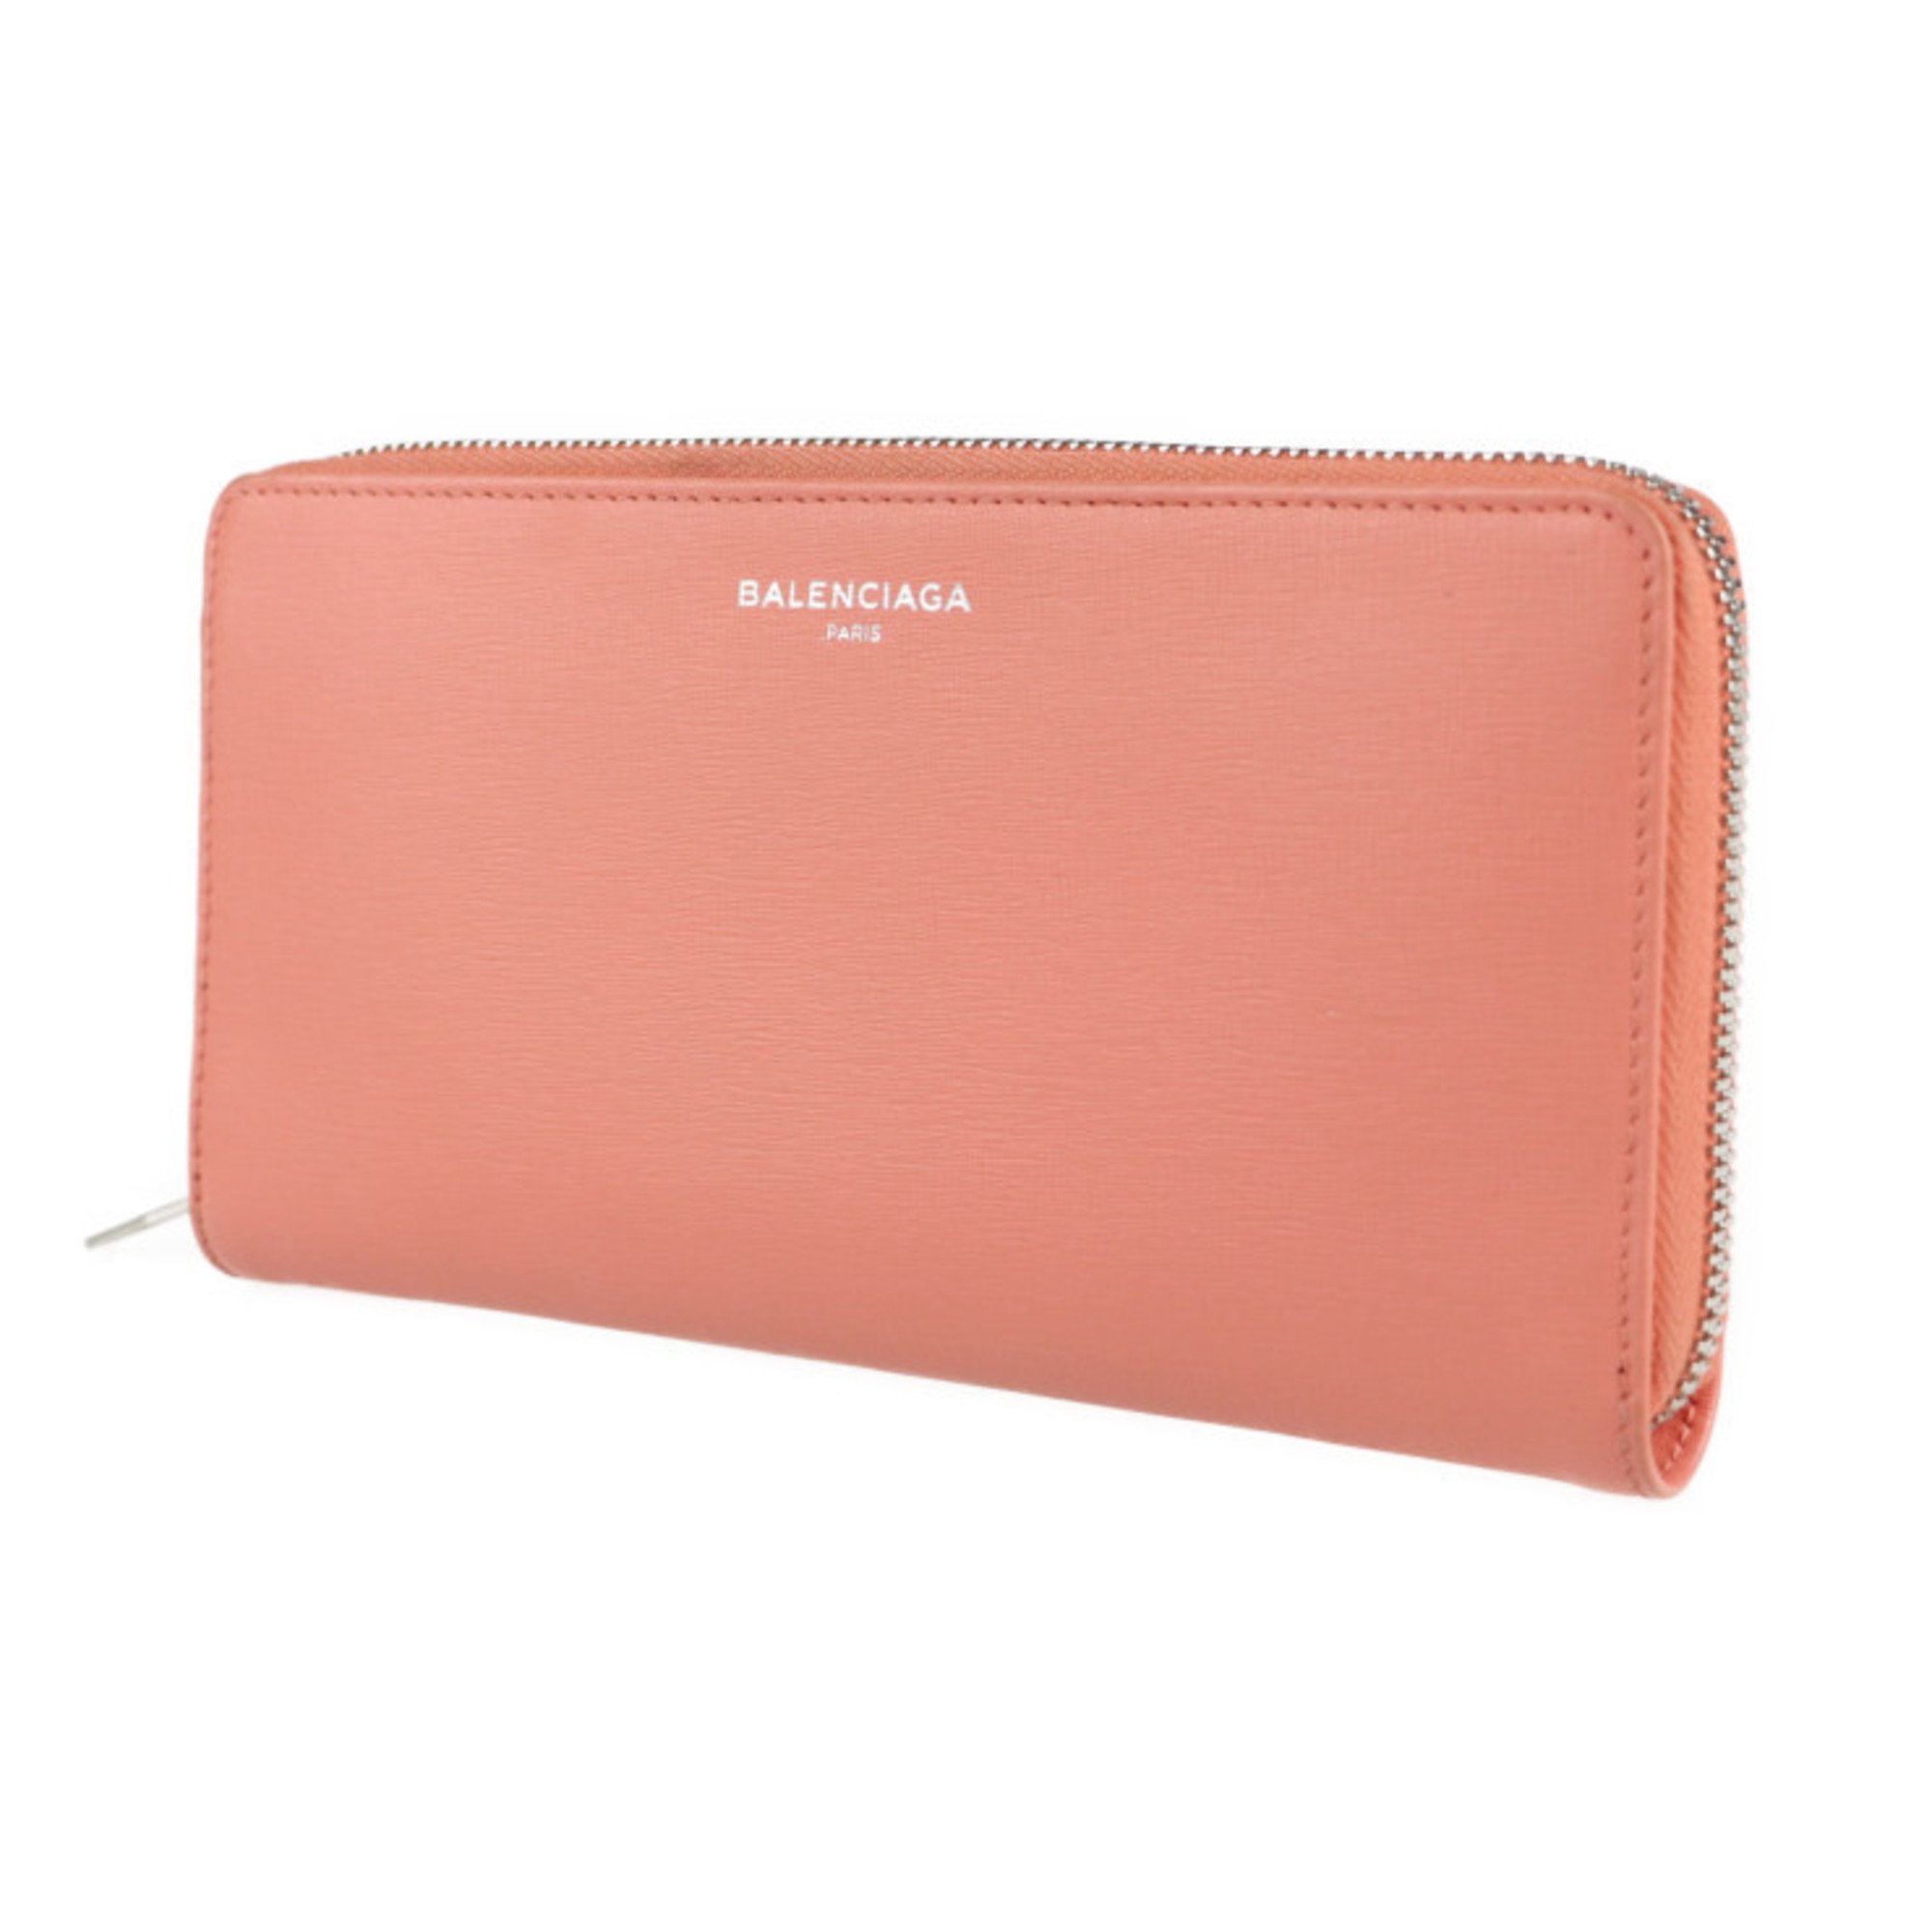 BALENCIAGA Balenciaga essential long wallet 519641 leather salmon pink round zipper